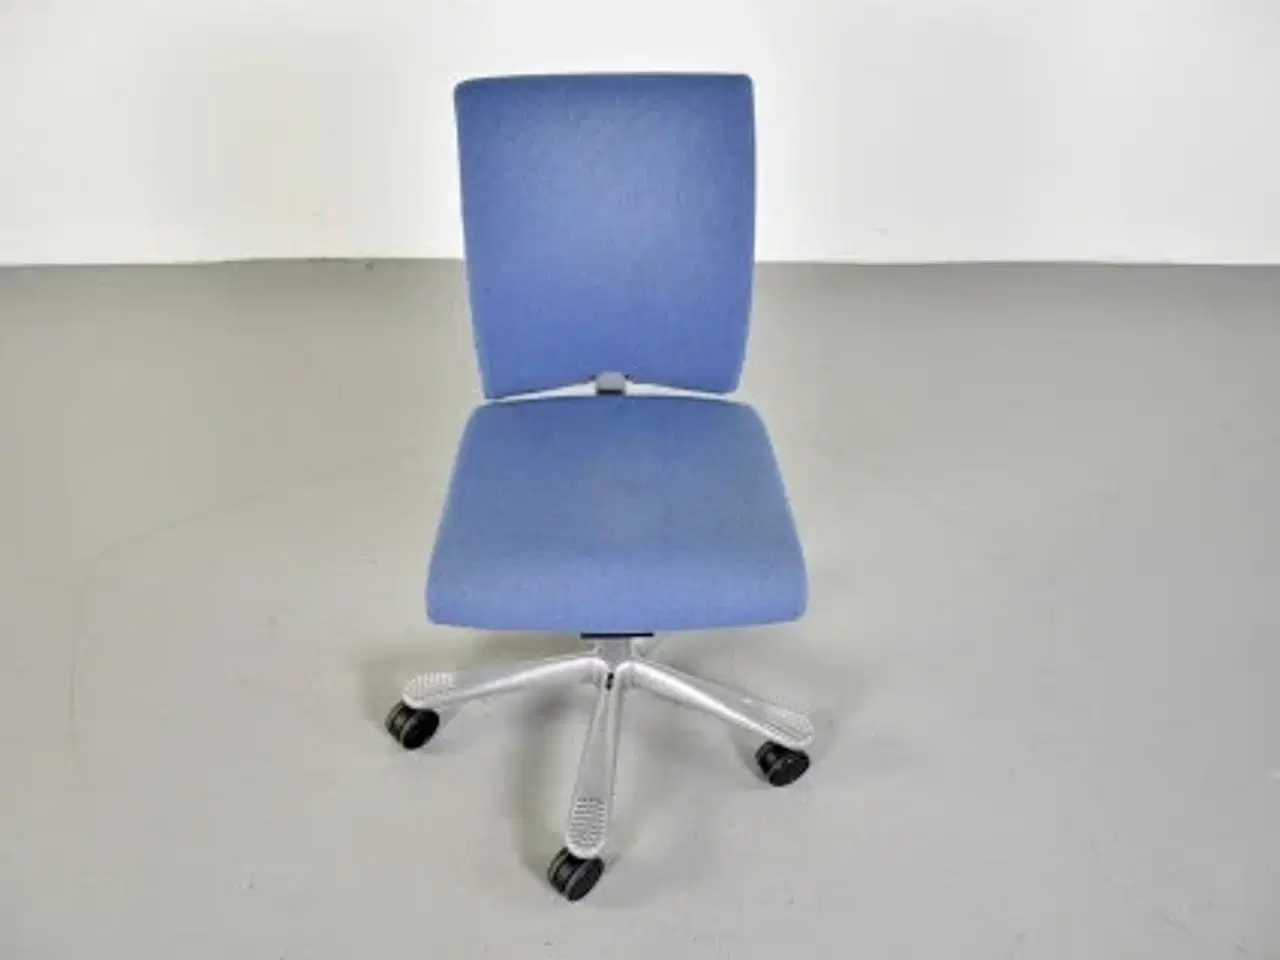 Billede 5 - Häg h04 credo 4200 kontorstol med lyseblåt polster og gråt stel